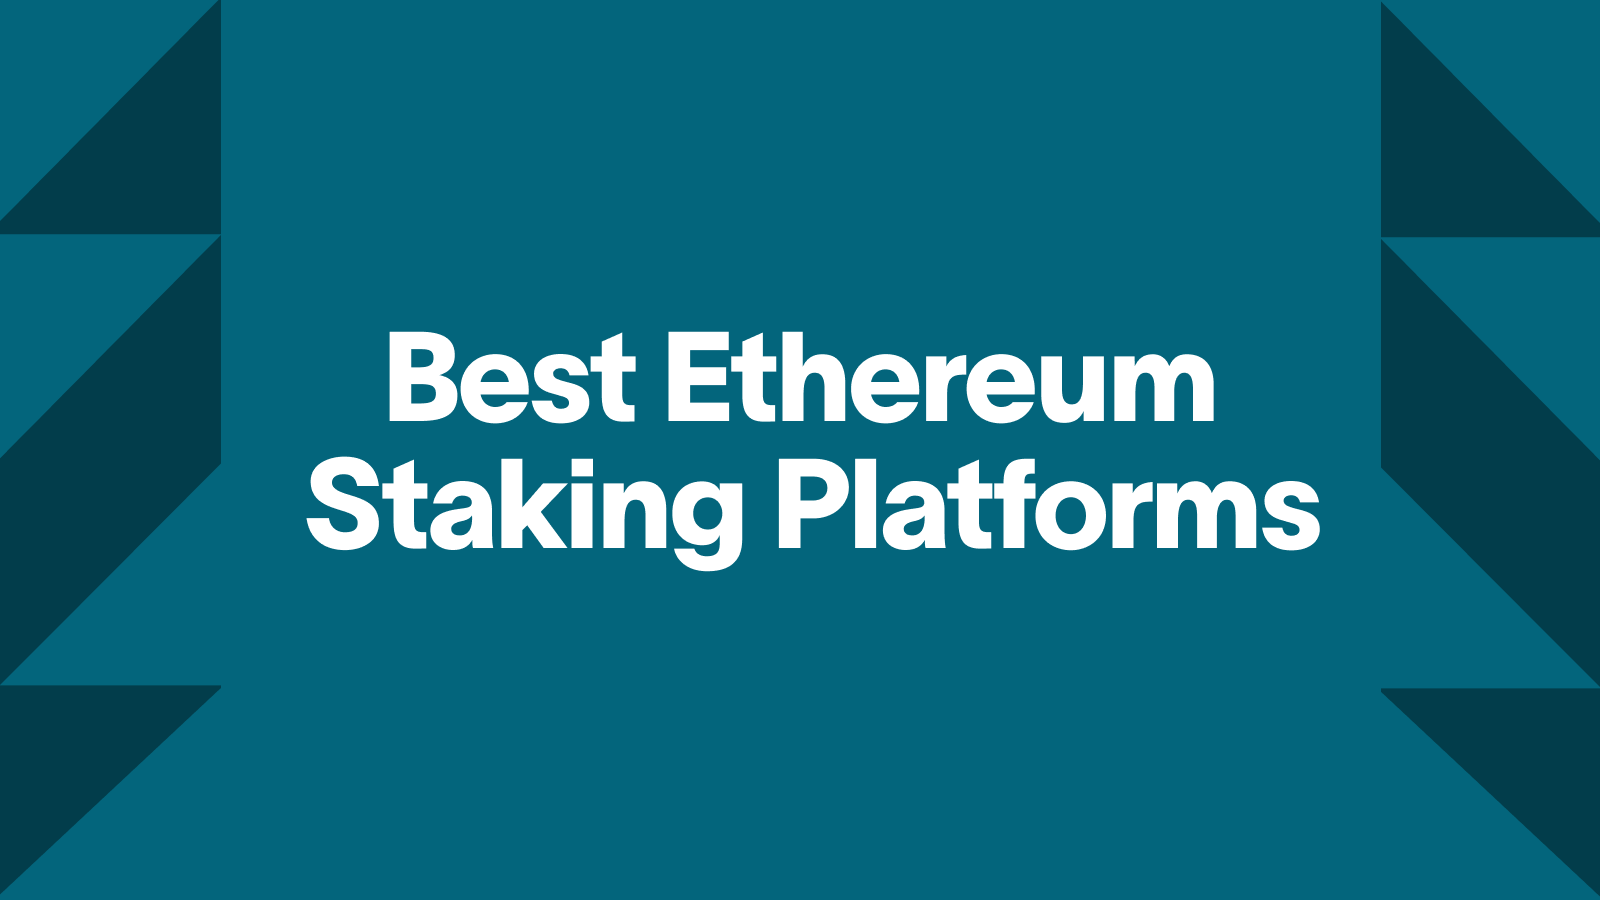 Where To Stake Ethereum $: 11 Best ETH Reward Platforms